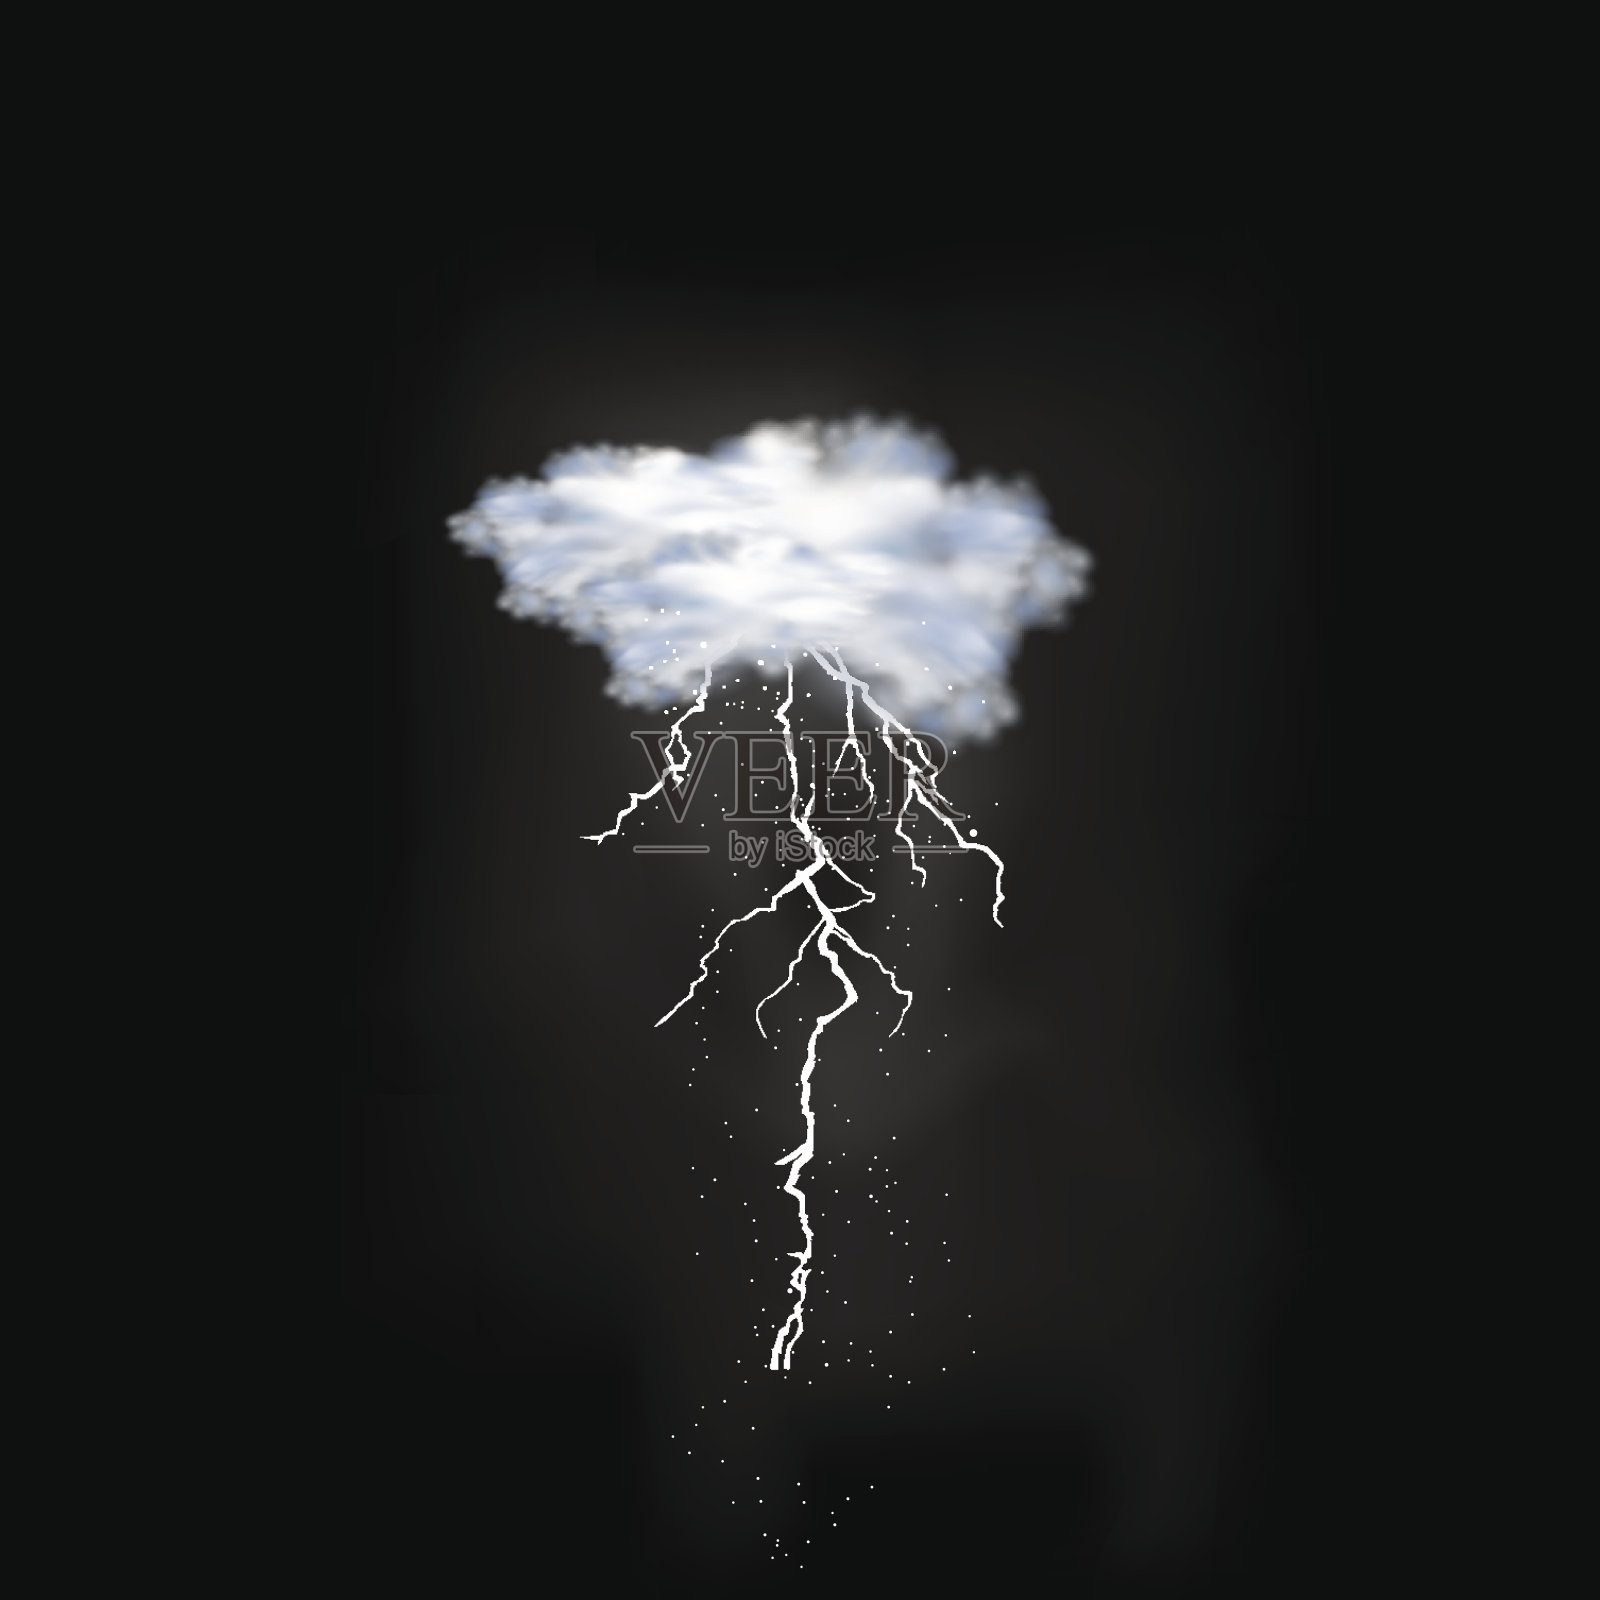 闪电击中天空背景插画图片素材